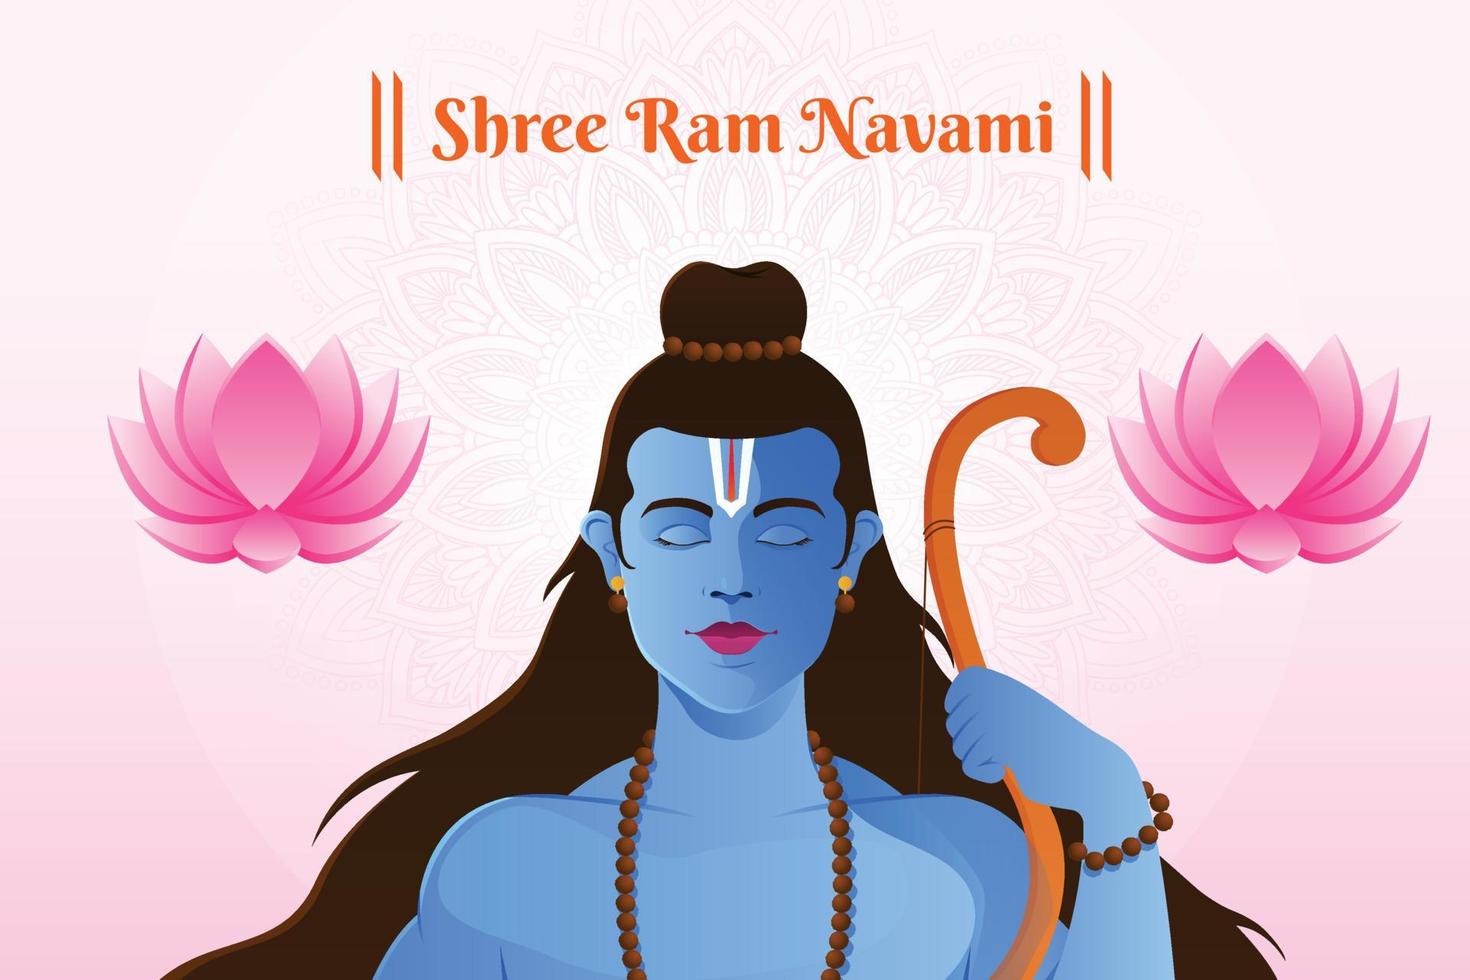 Shree Ram Navami celebration Lord Rama with bow and arrow vector